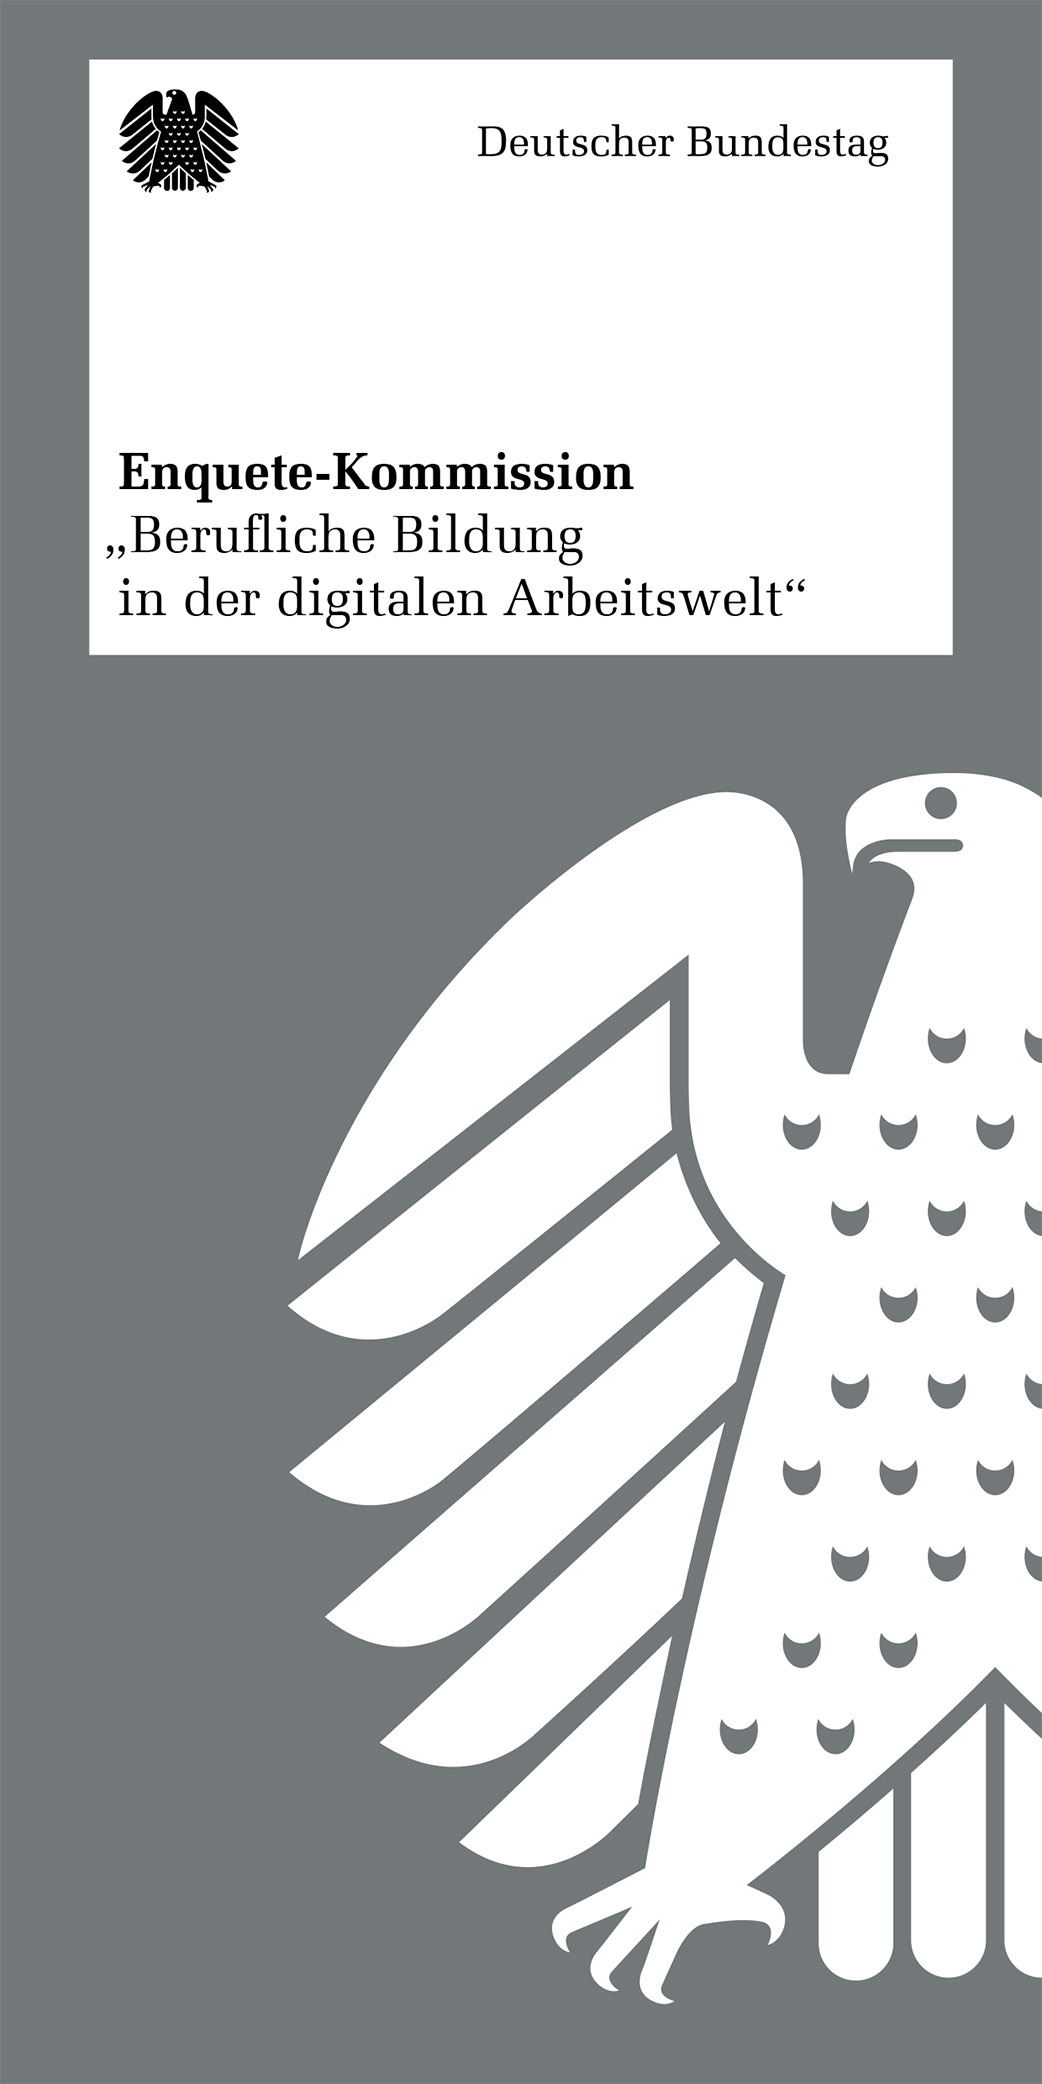 Flyer: Enquete-Kommission "Berufliche Bildung in der digitalen Arbeitswelt"